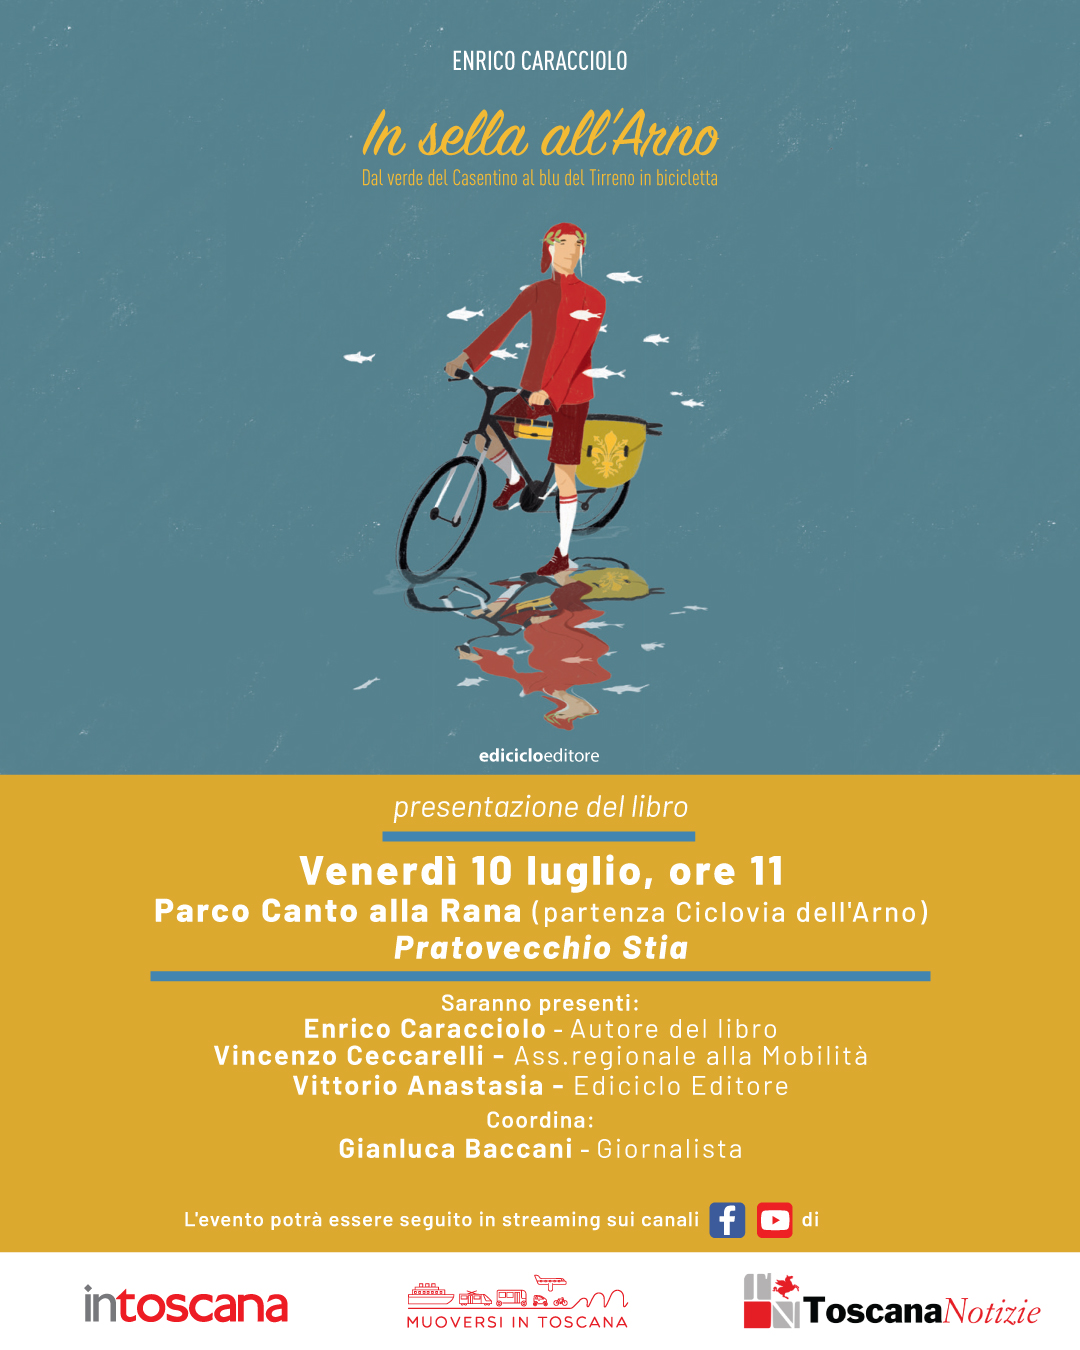 Ciclovia dell'Arno, conferenza stampa in Casentino. Segui la diretta streaming